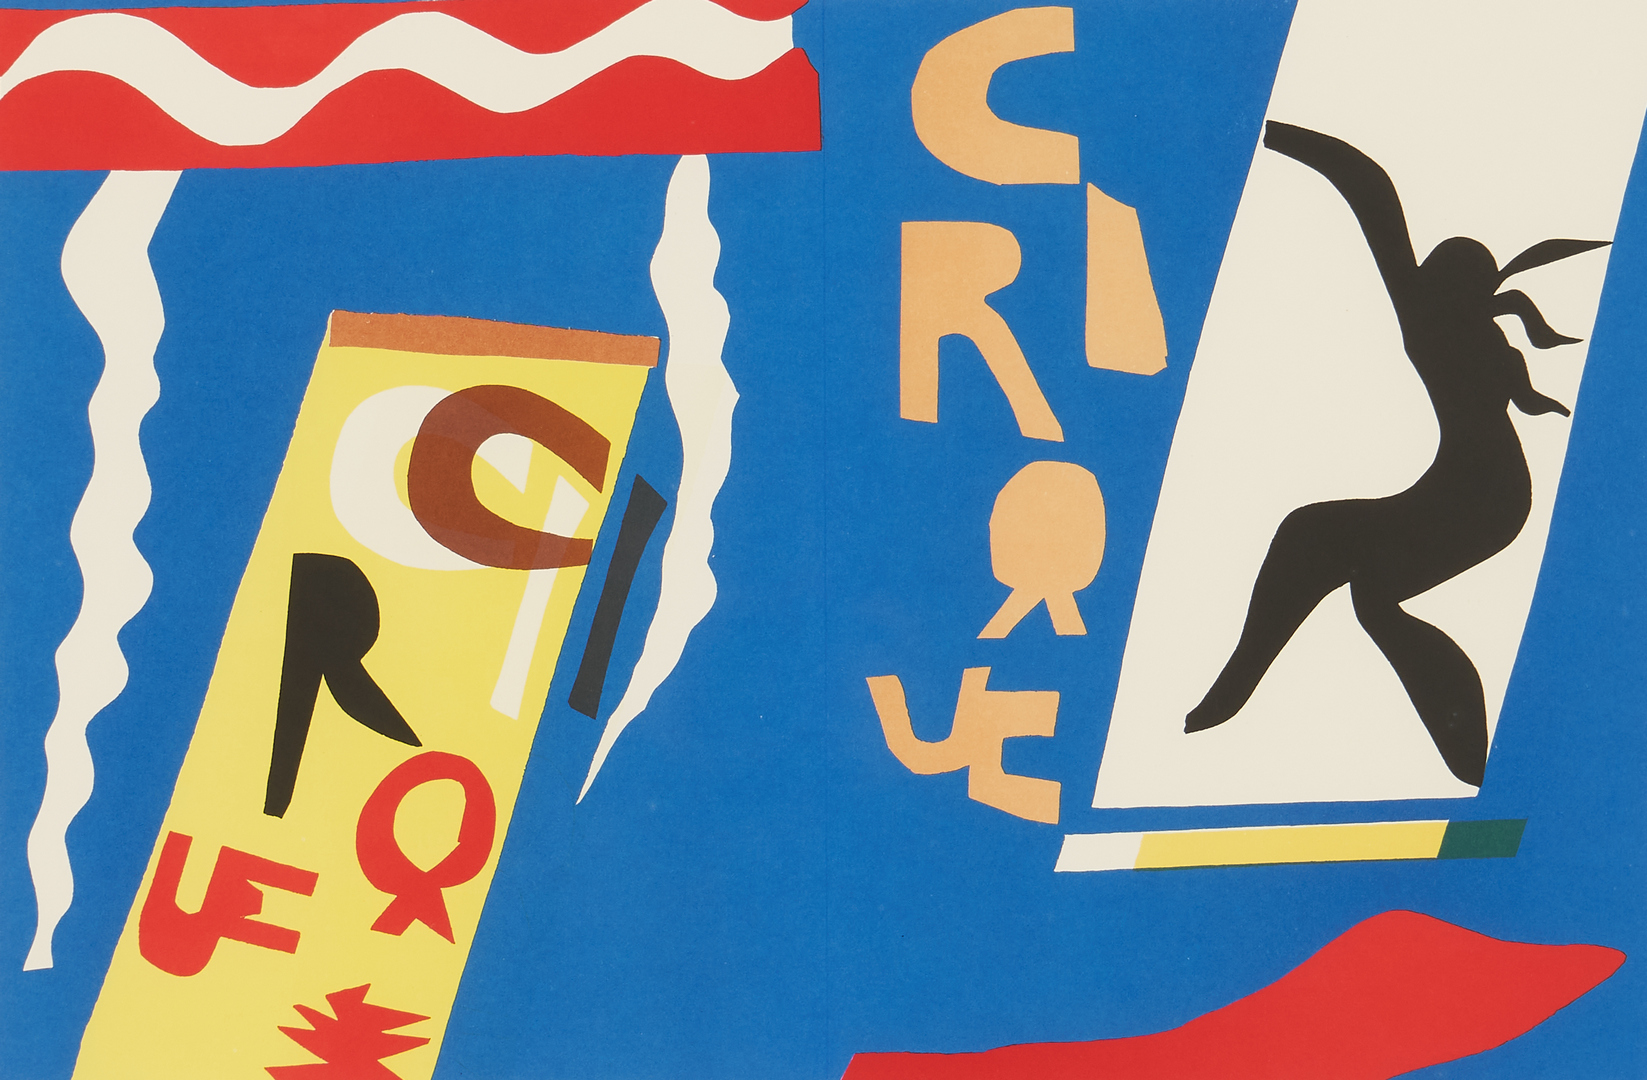 Lot 553: Matisse "Jazz" Series Portfolio, 20 framed color plates